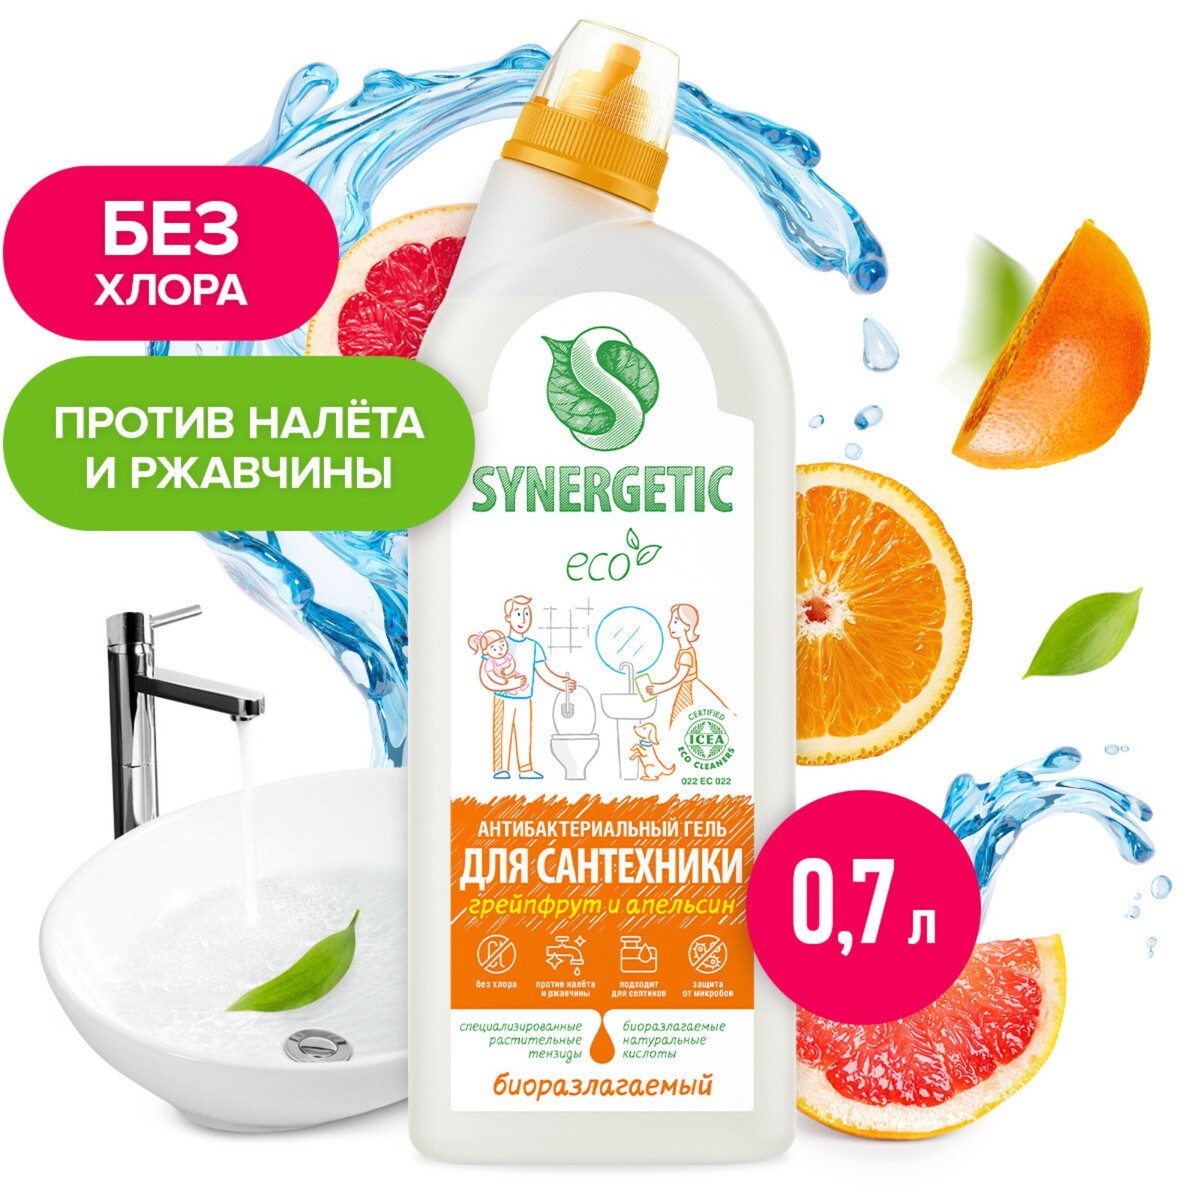 Средство биоразлагаемое для мытья сантехники synergetic грейпфрут и апельсин 5 в 1, 0,7л prosept bath acryl средство для чистки акриловых поверхностей 5 л